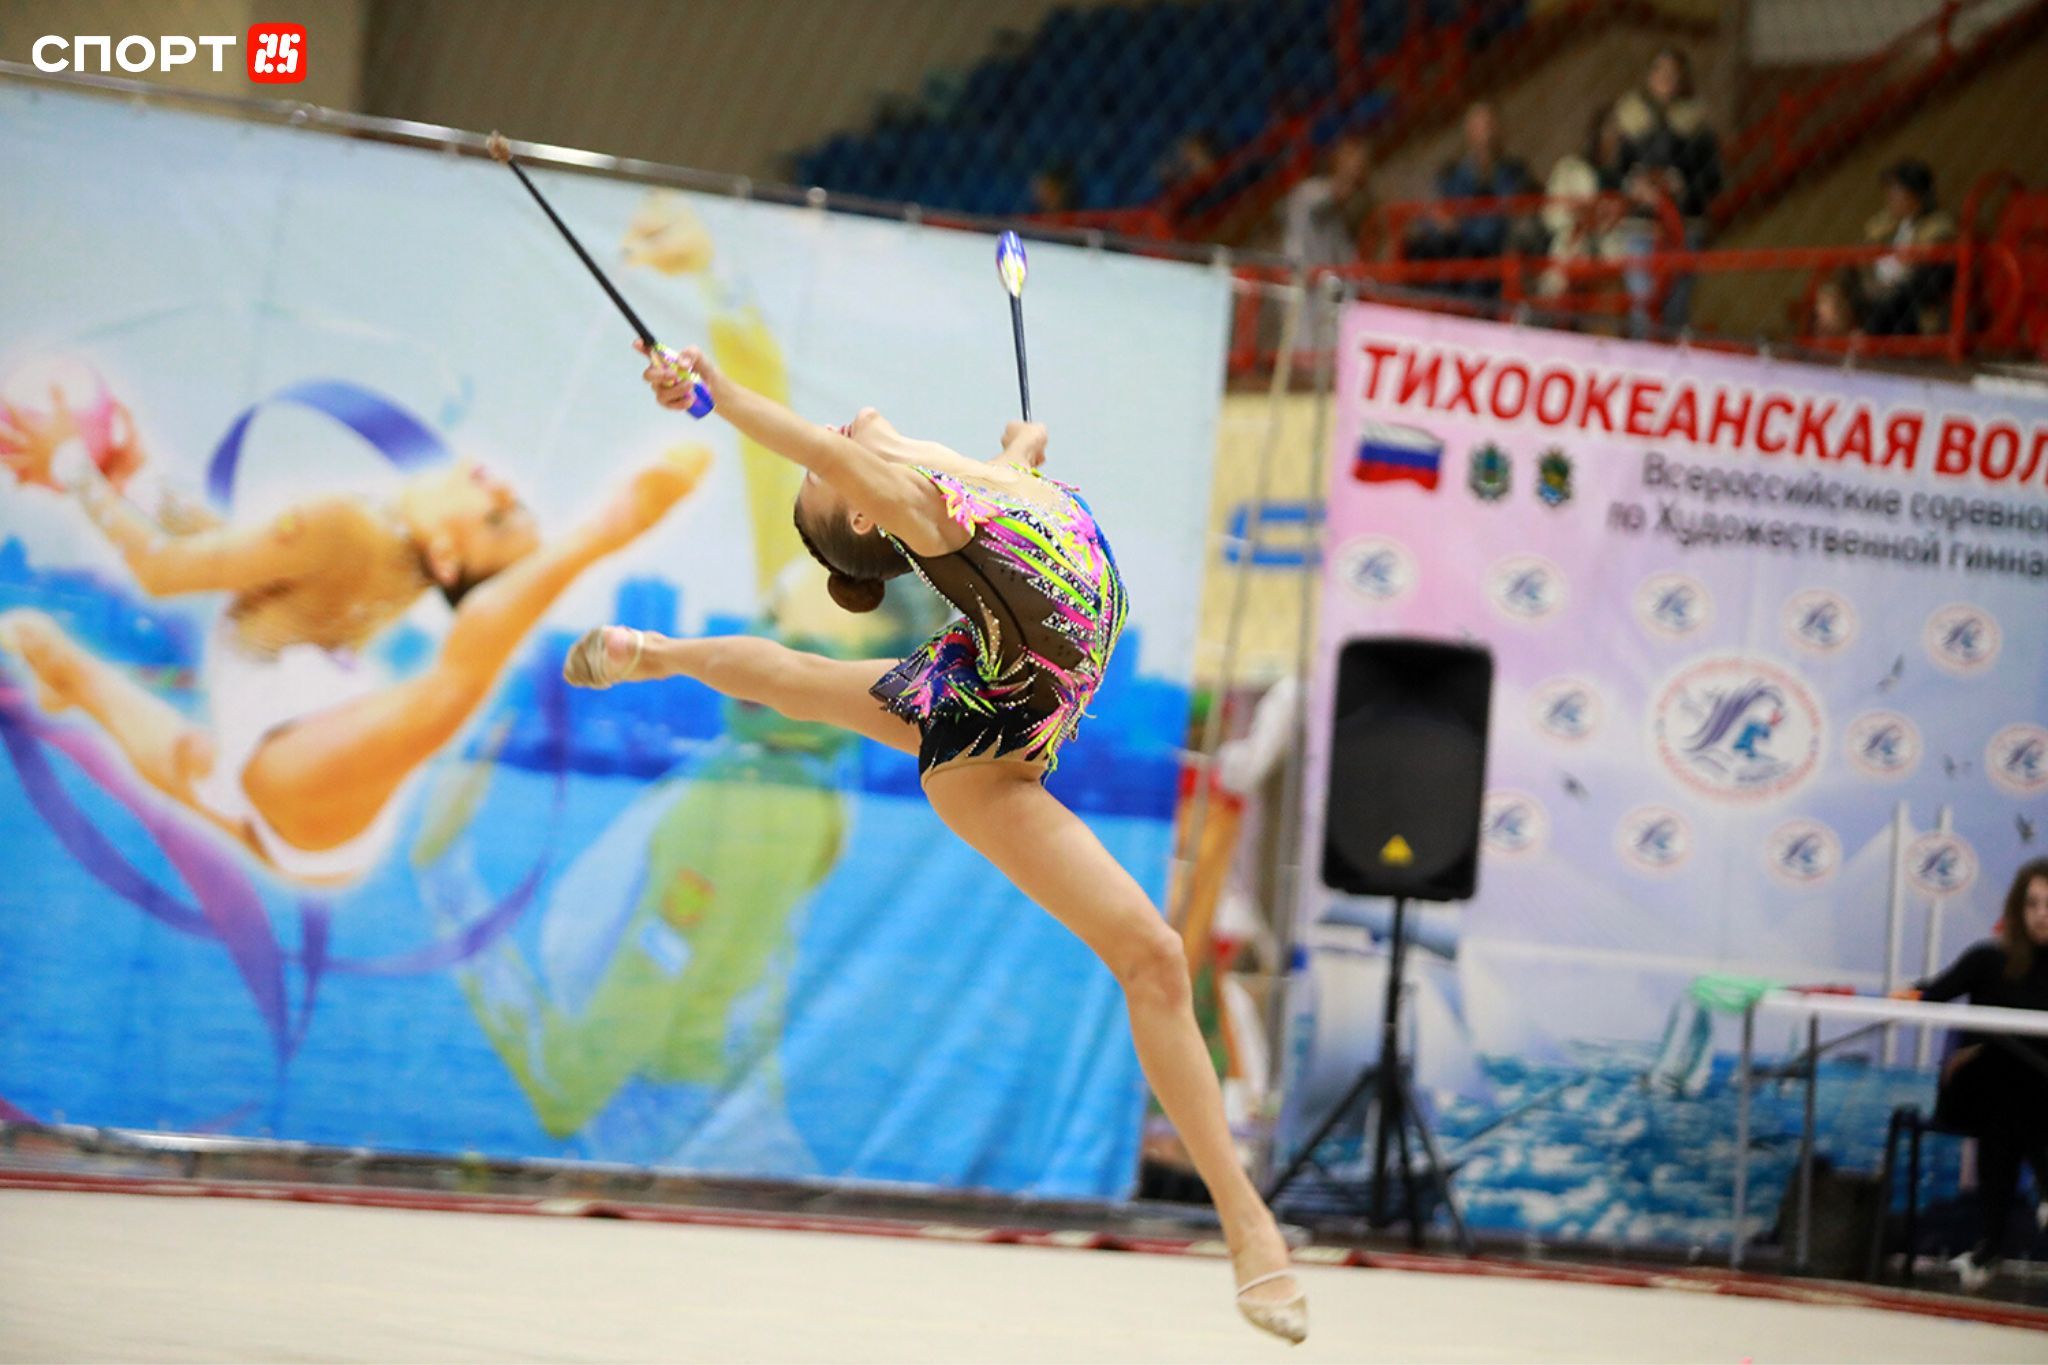 Тихоокеанская волна»: Всероссийский турнир гимнасток состоялся в Приморье —  СПОРТ25